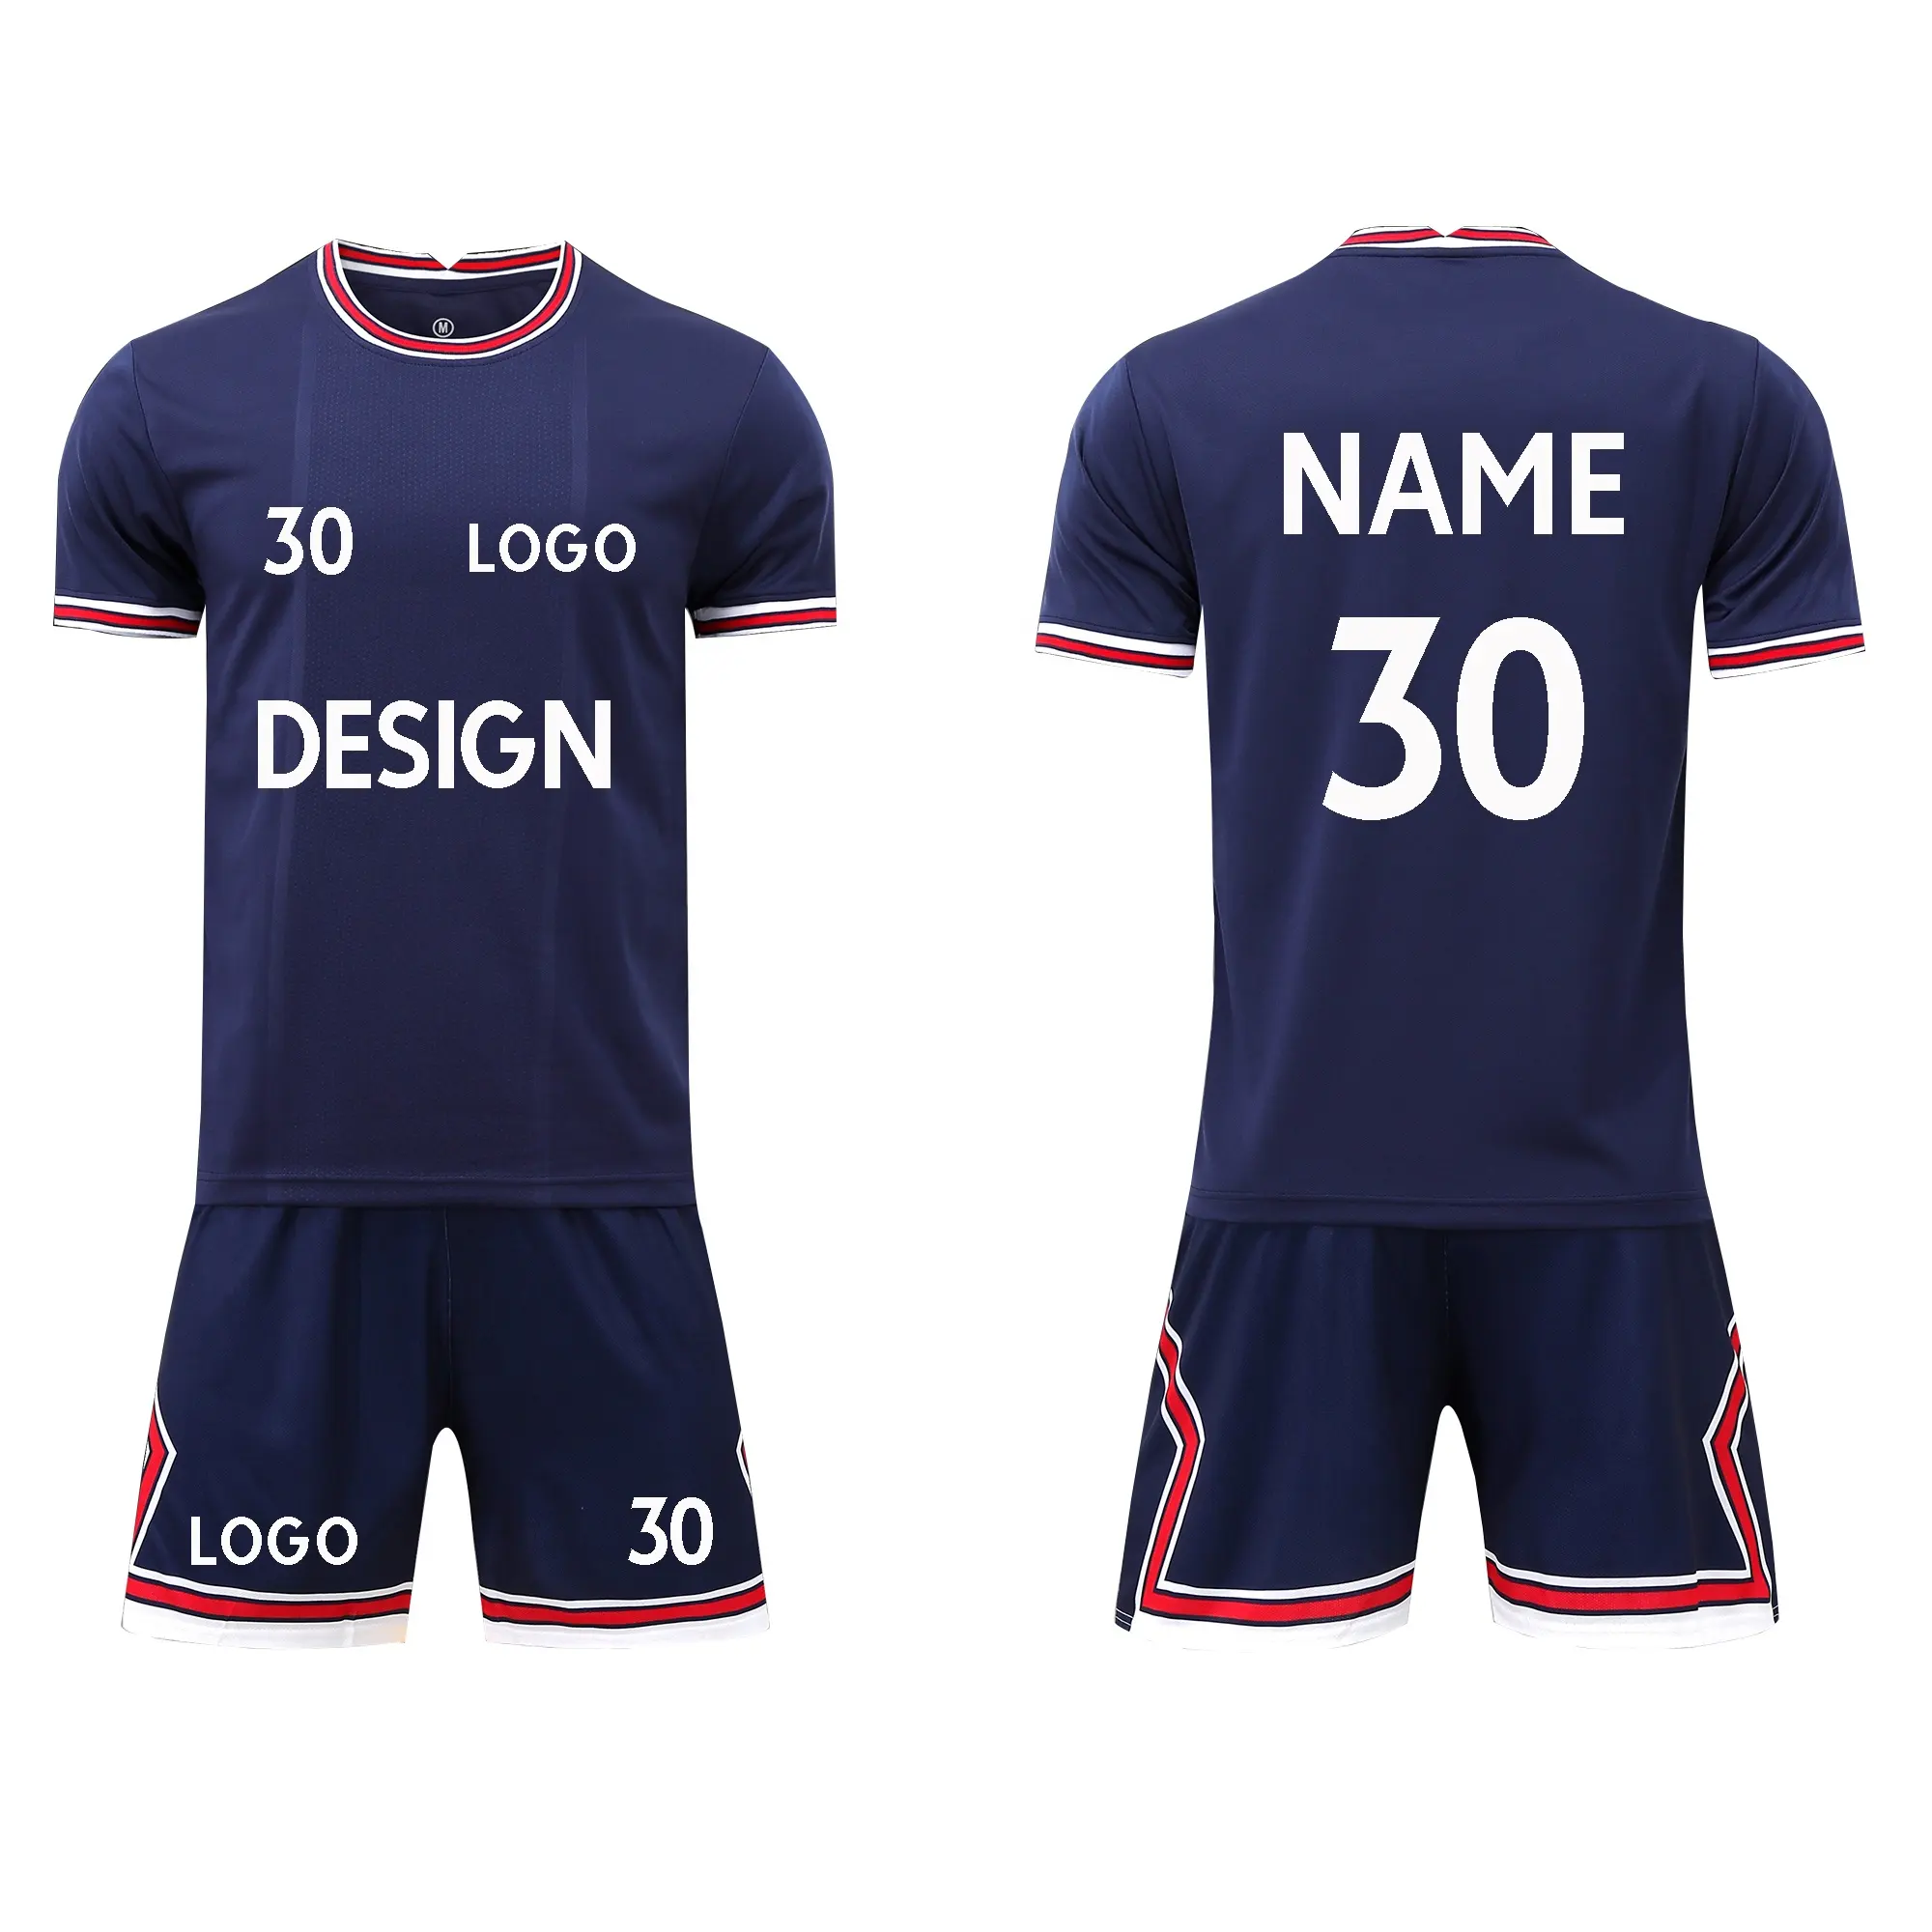 Ensemble de maillots et de chemises pour hommes, nouveau vêtement de Football personnalisé avec numéro 30, nouveau modèle d'équipe, collection 2019